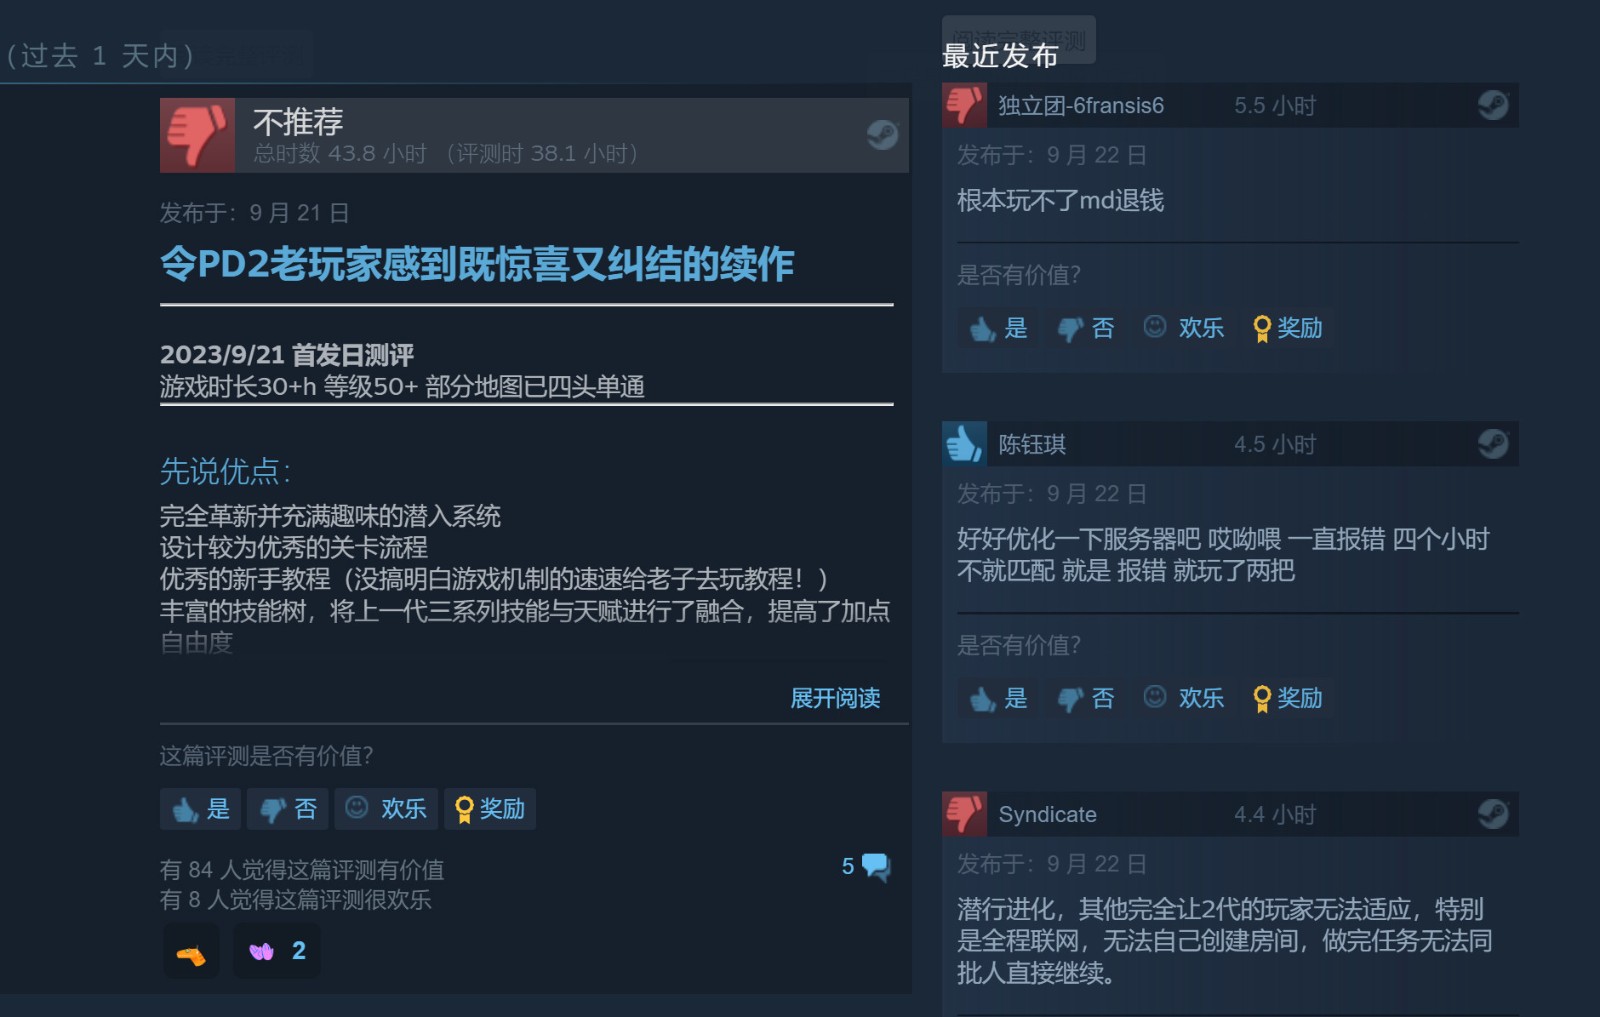 《收获日3》现已推出 Steam中文评价多半差评